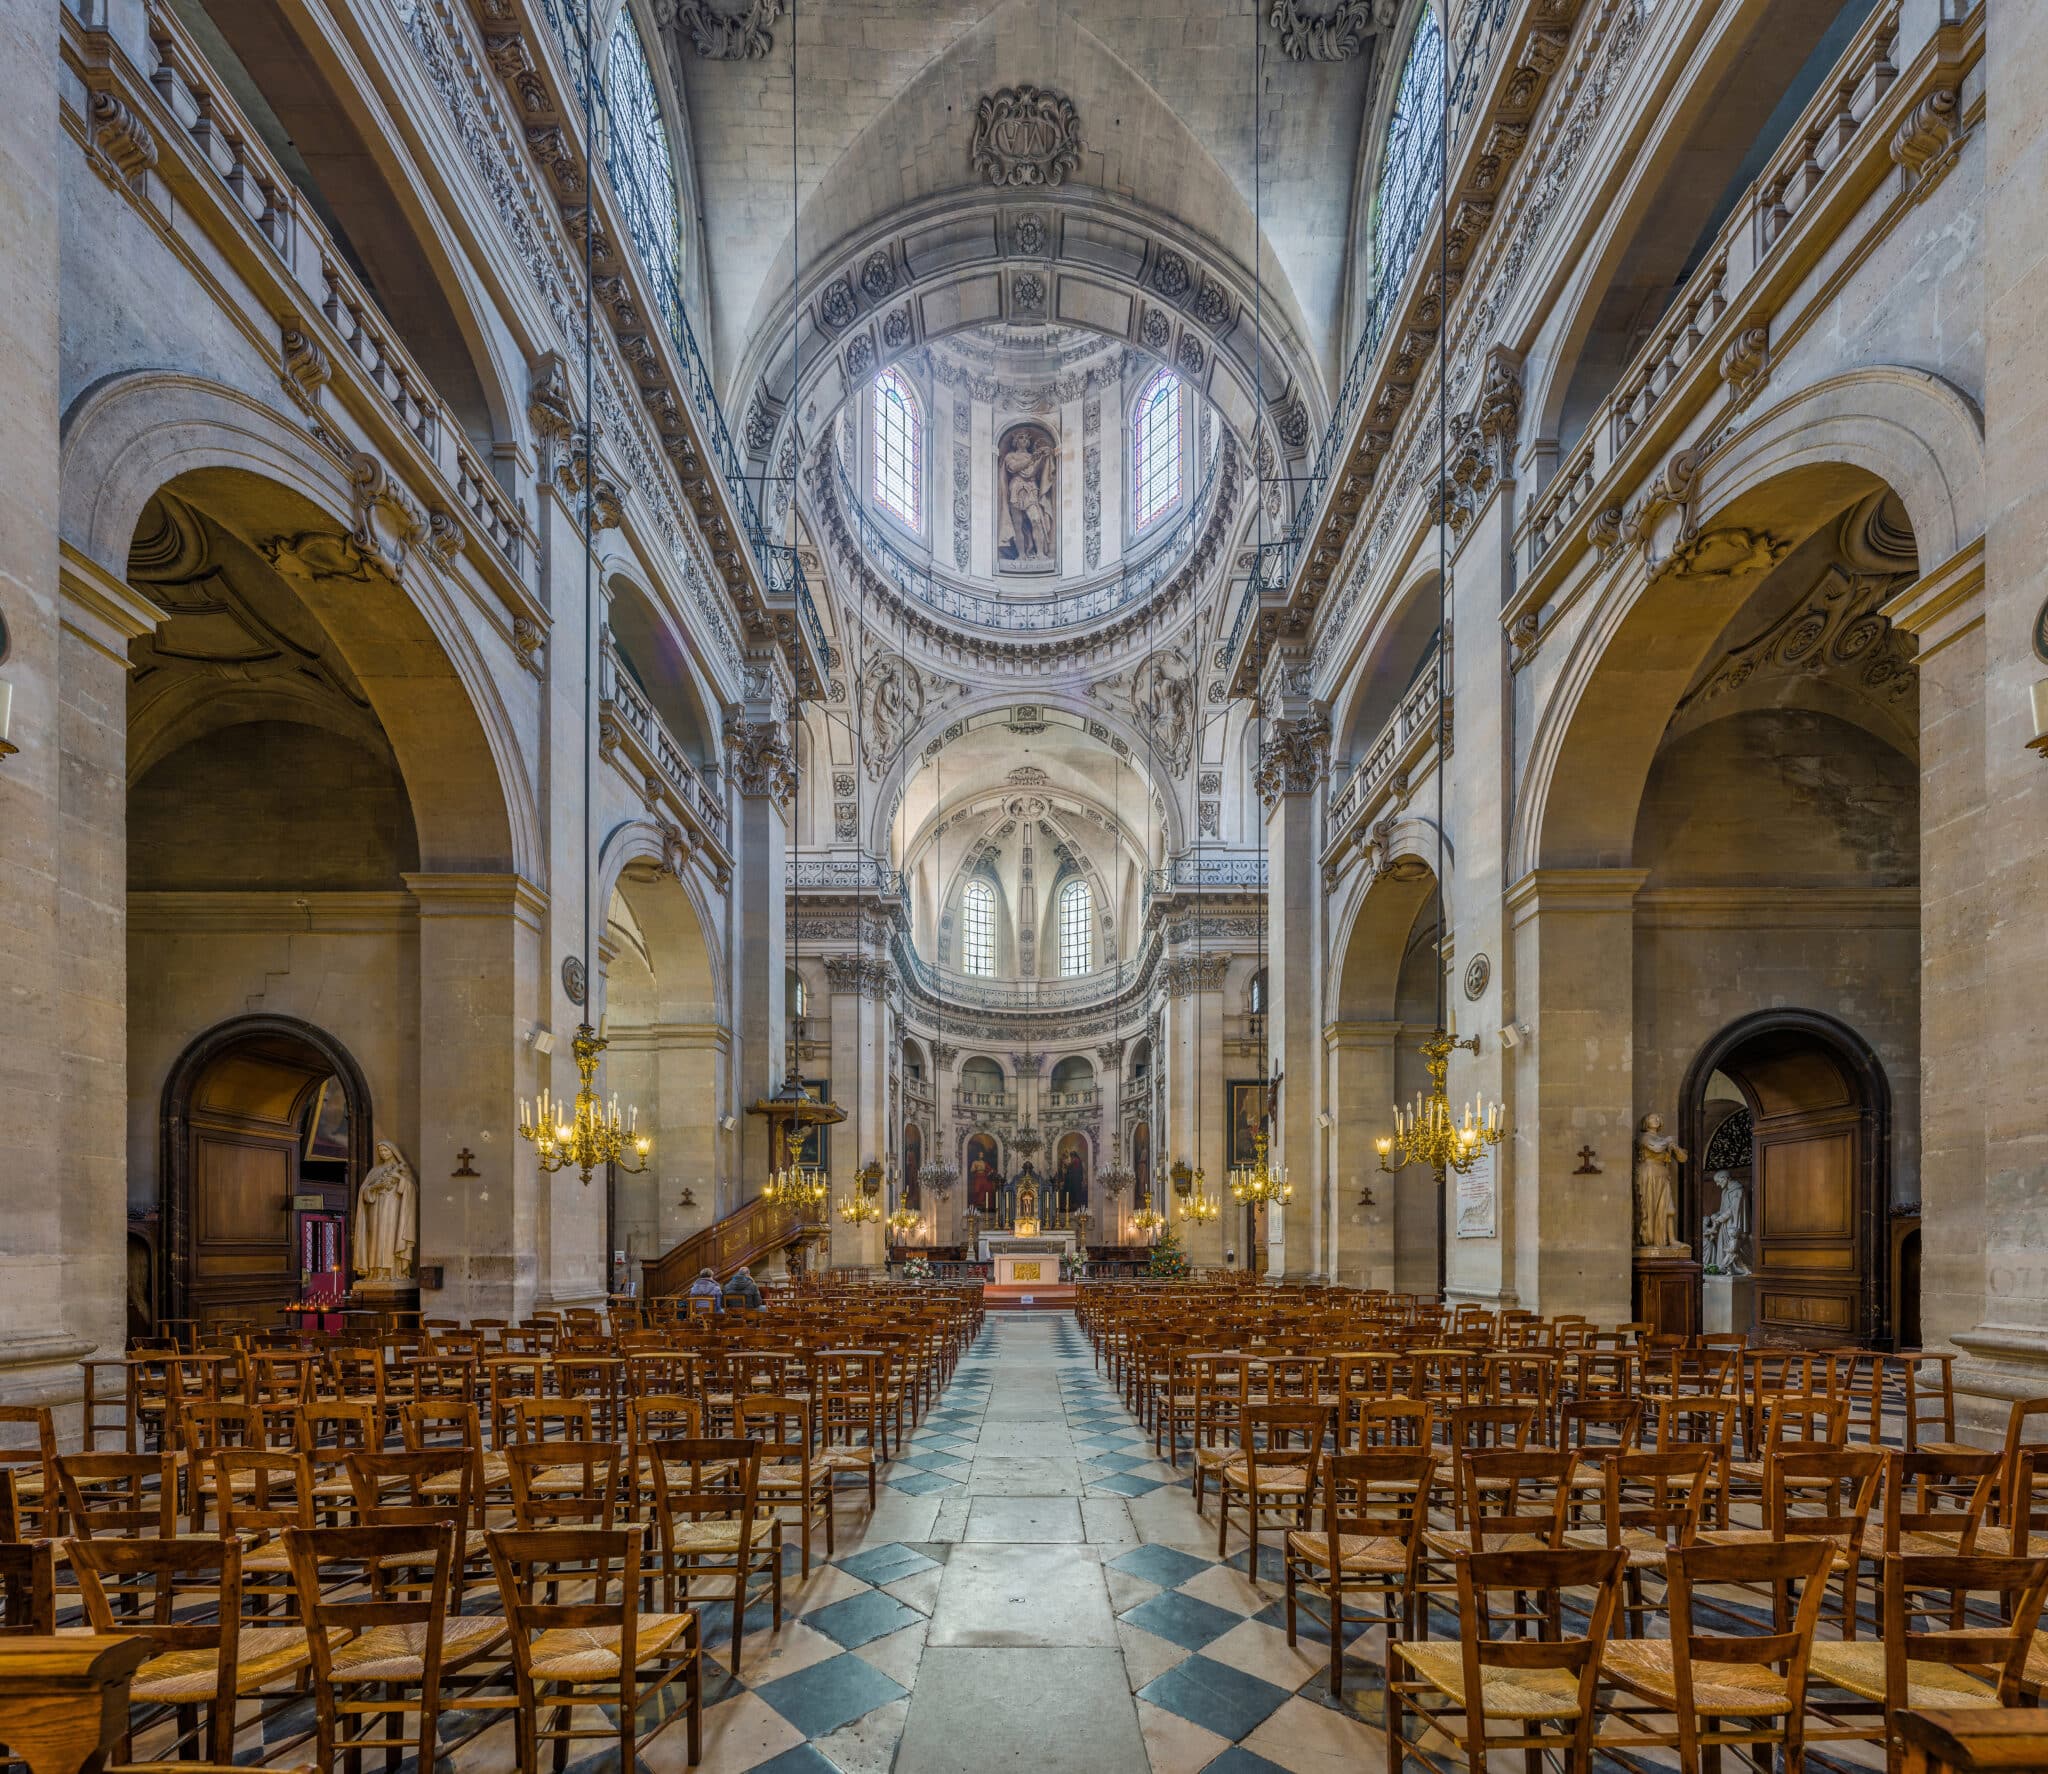 Eglise Saint-Paul-Saint-Louis, Paris